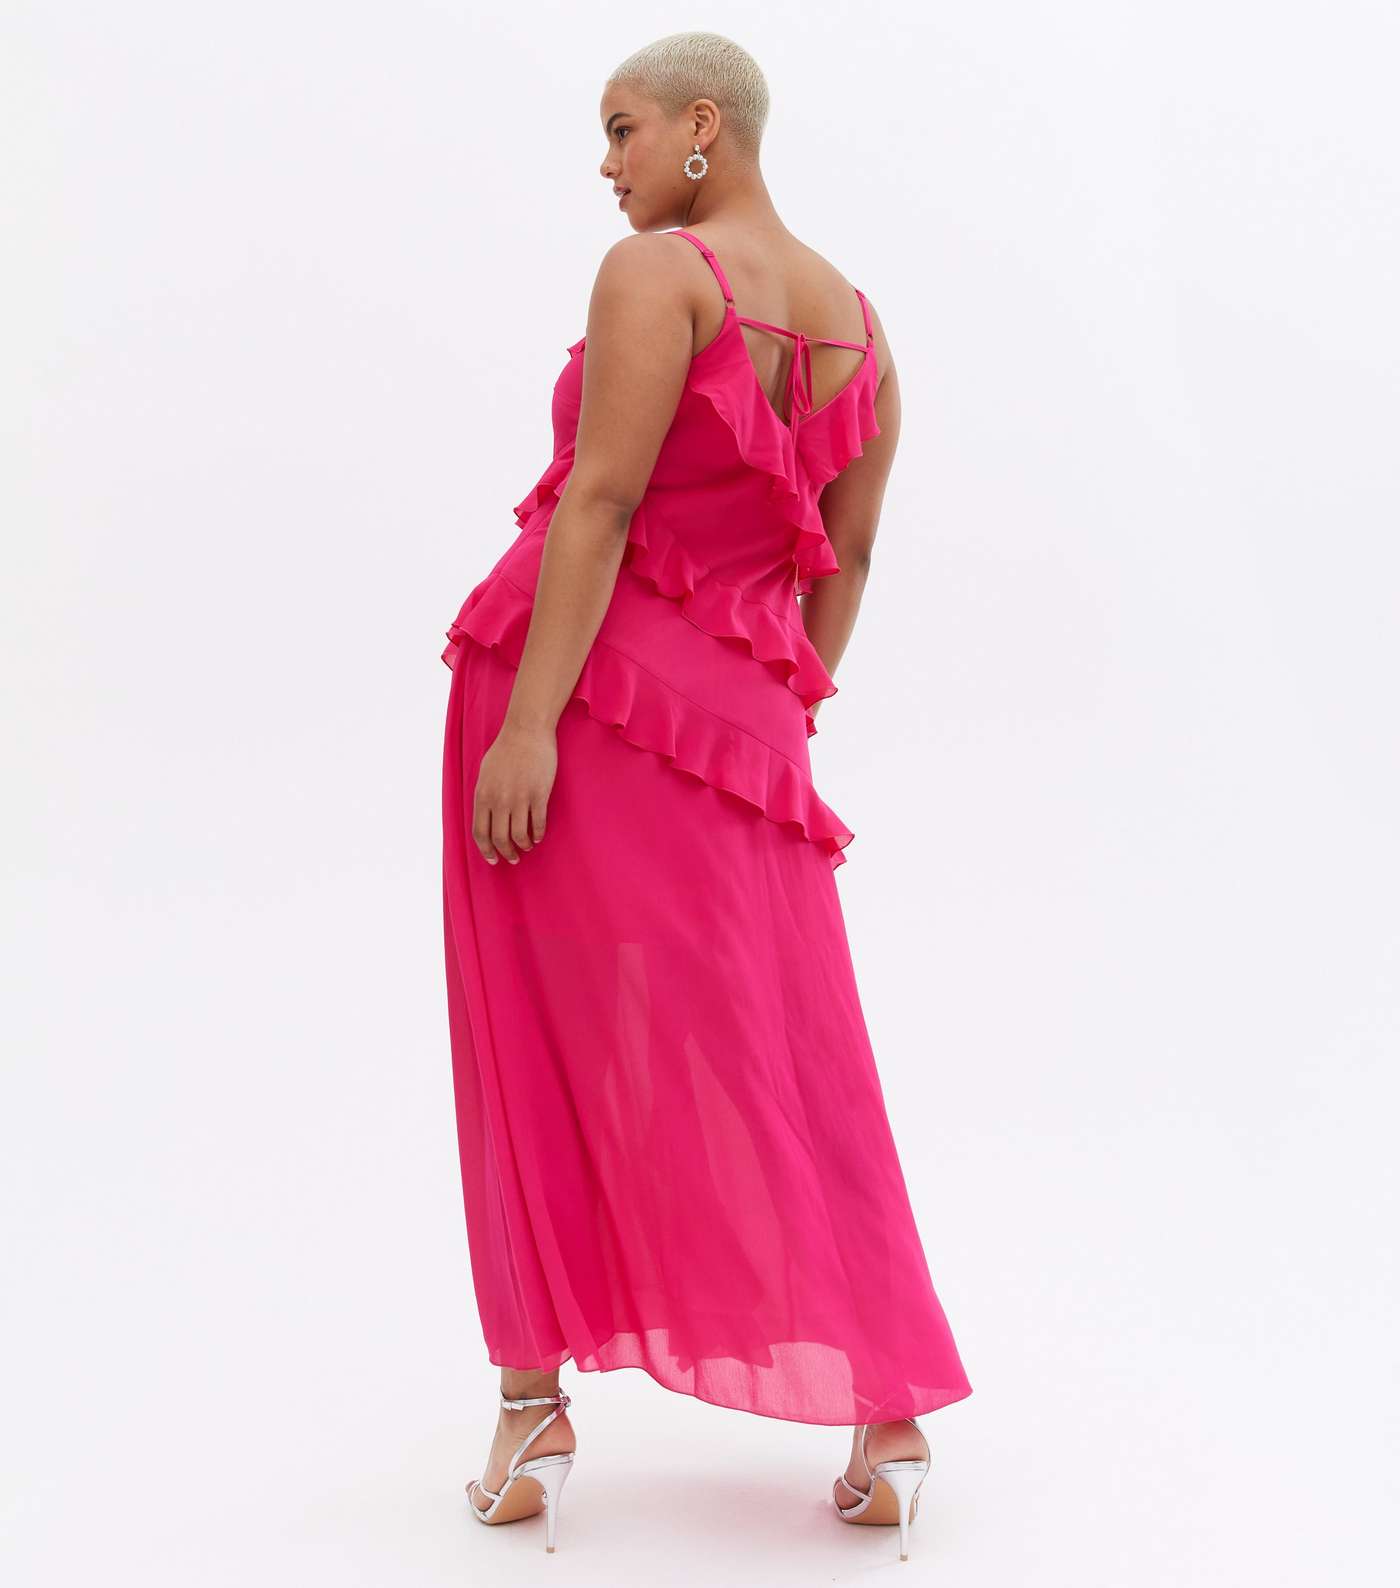 Curves Bright Pink Chiffon Ruffle Maxi Dress Image 4